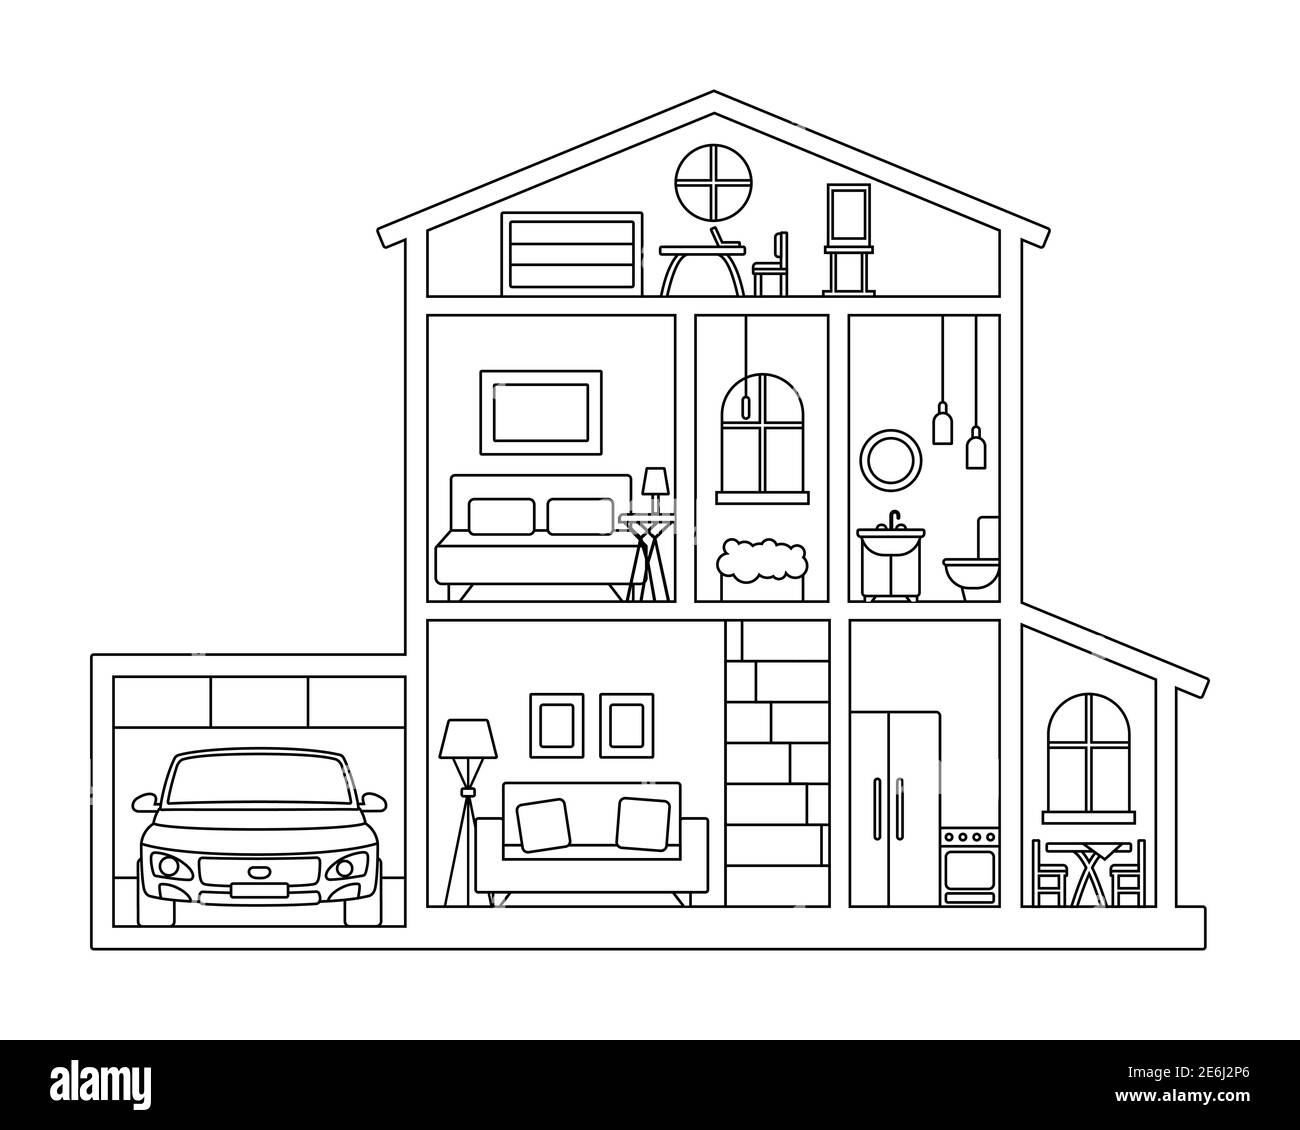 Illustration pour livre de coloriage - coupe transversale de maison de campagne avec meubles, grenier et voiture dans garage. Intérieur de la maison de papier - contour noir et blanc Illustration de Vecteur